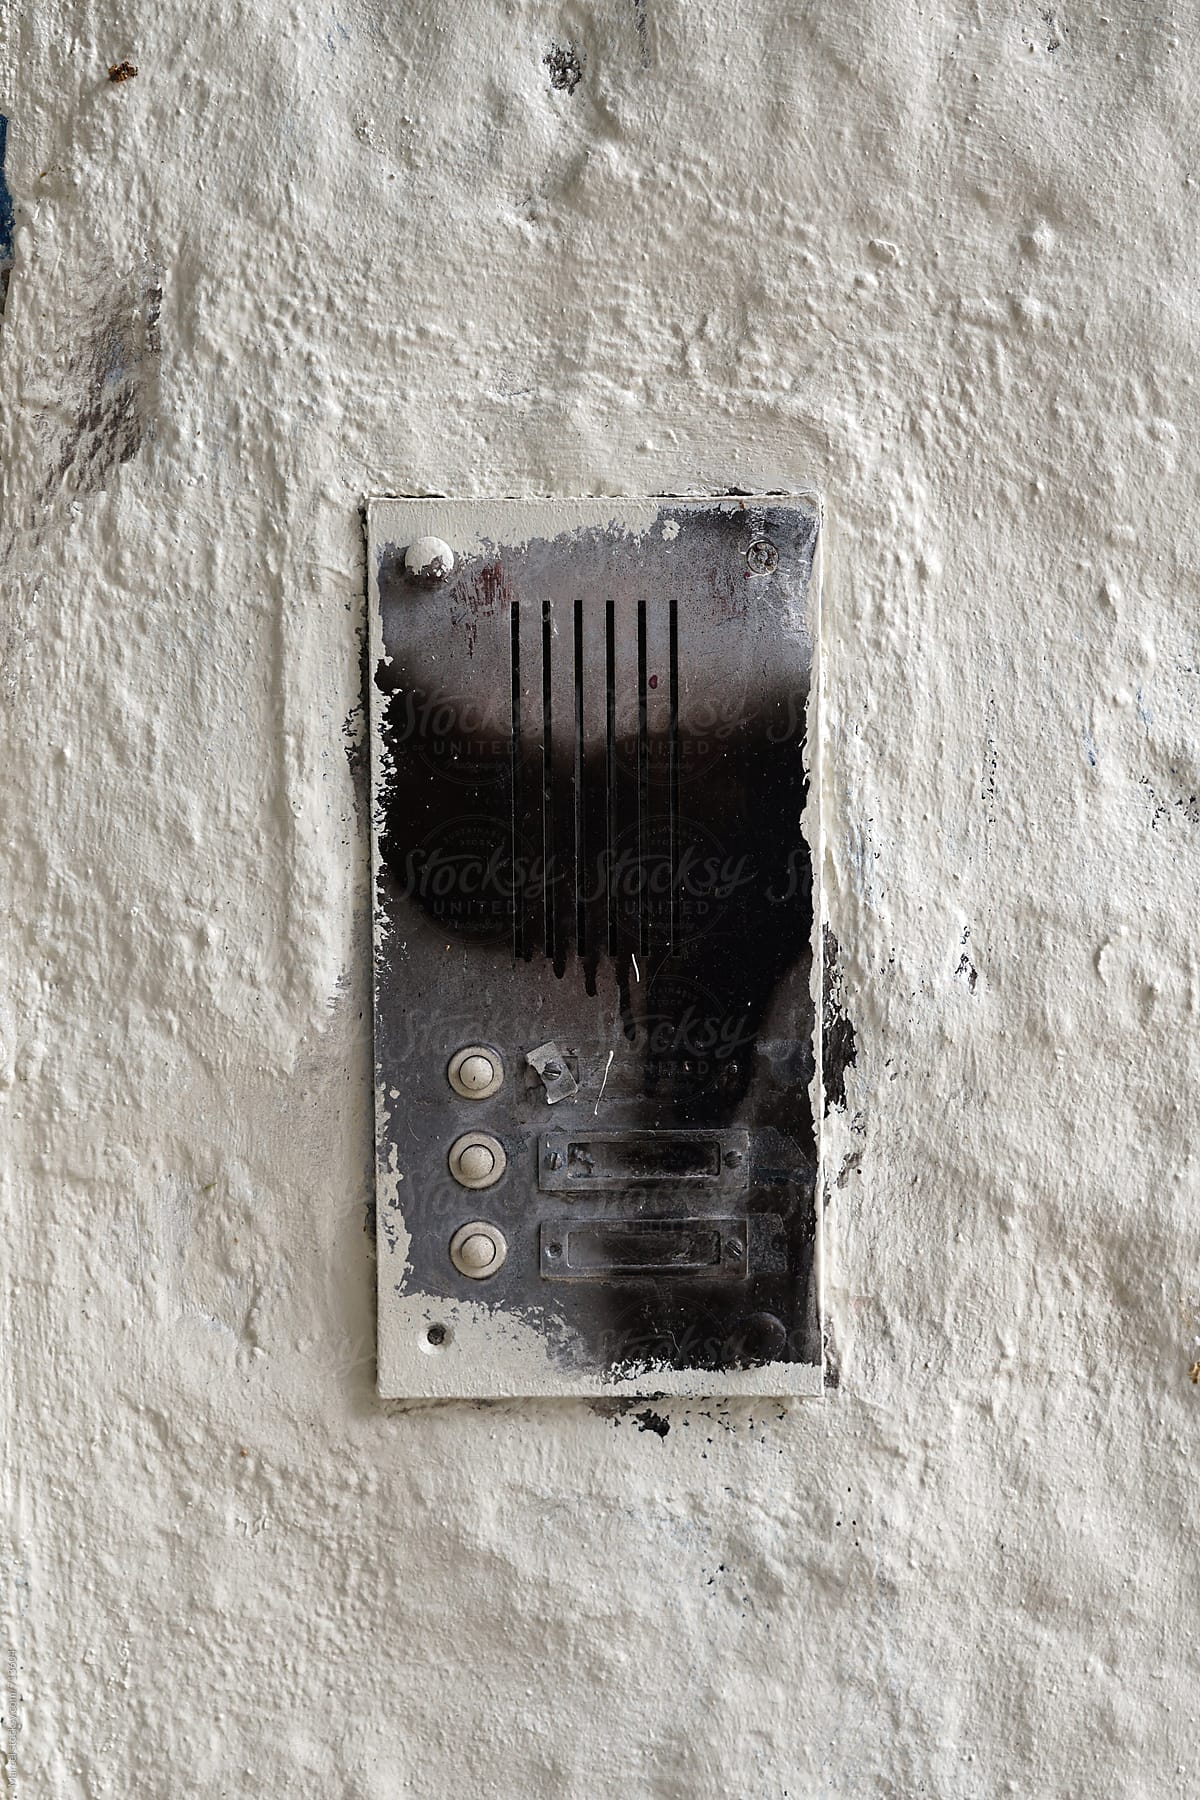 Doorbell on a wall